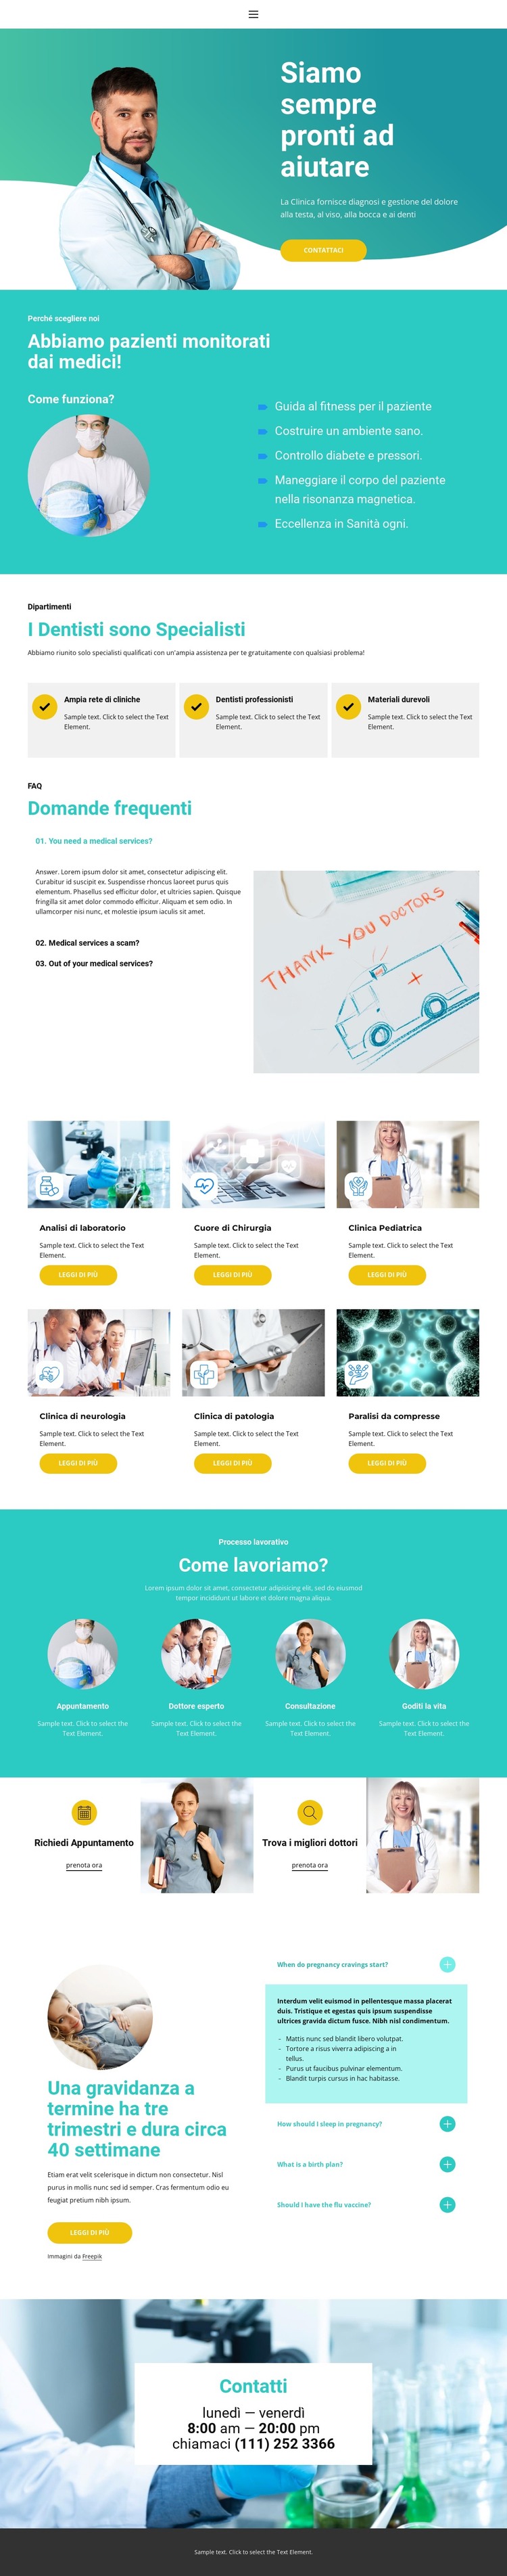 Nuovo centro medico Modello HTML